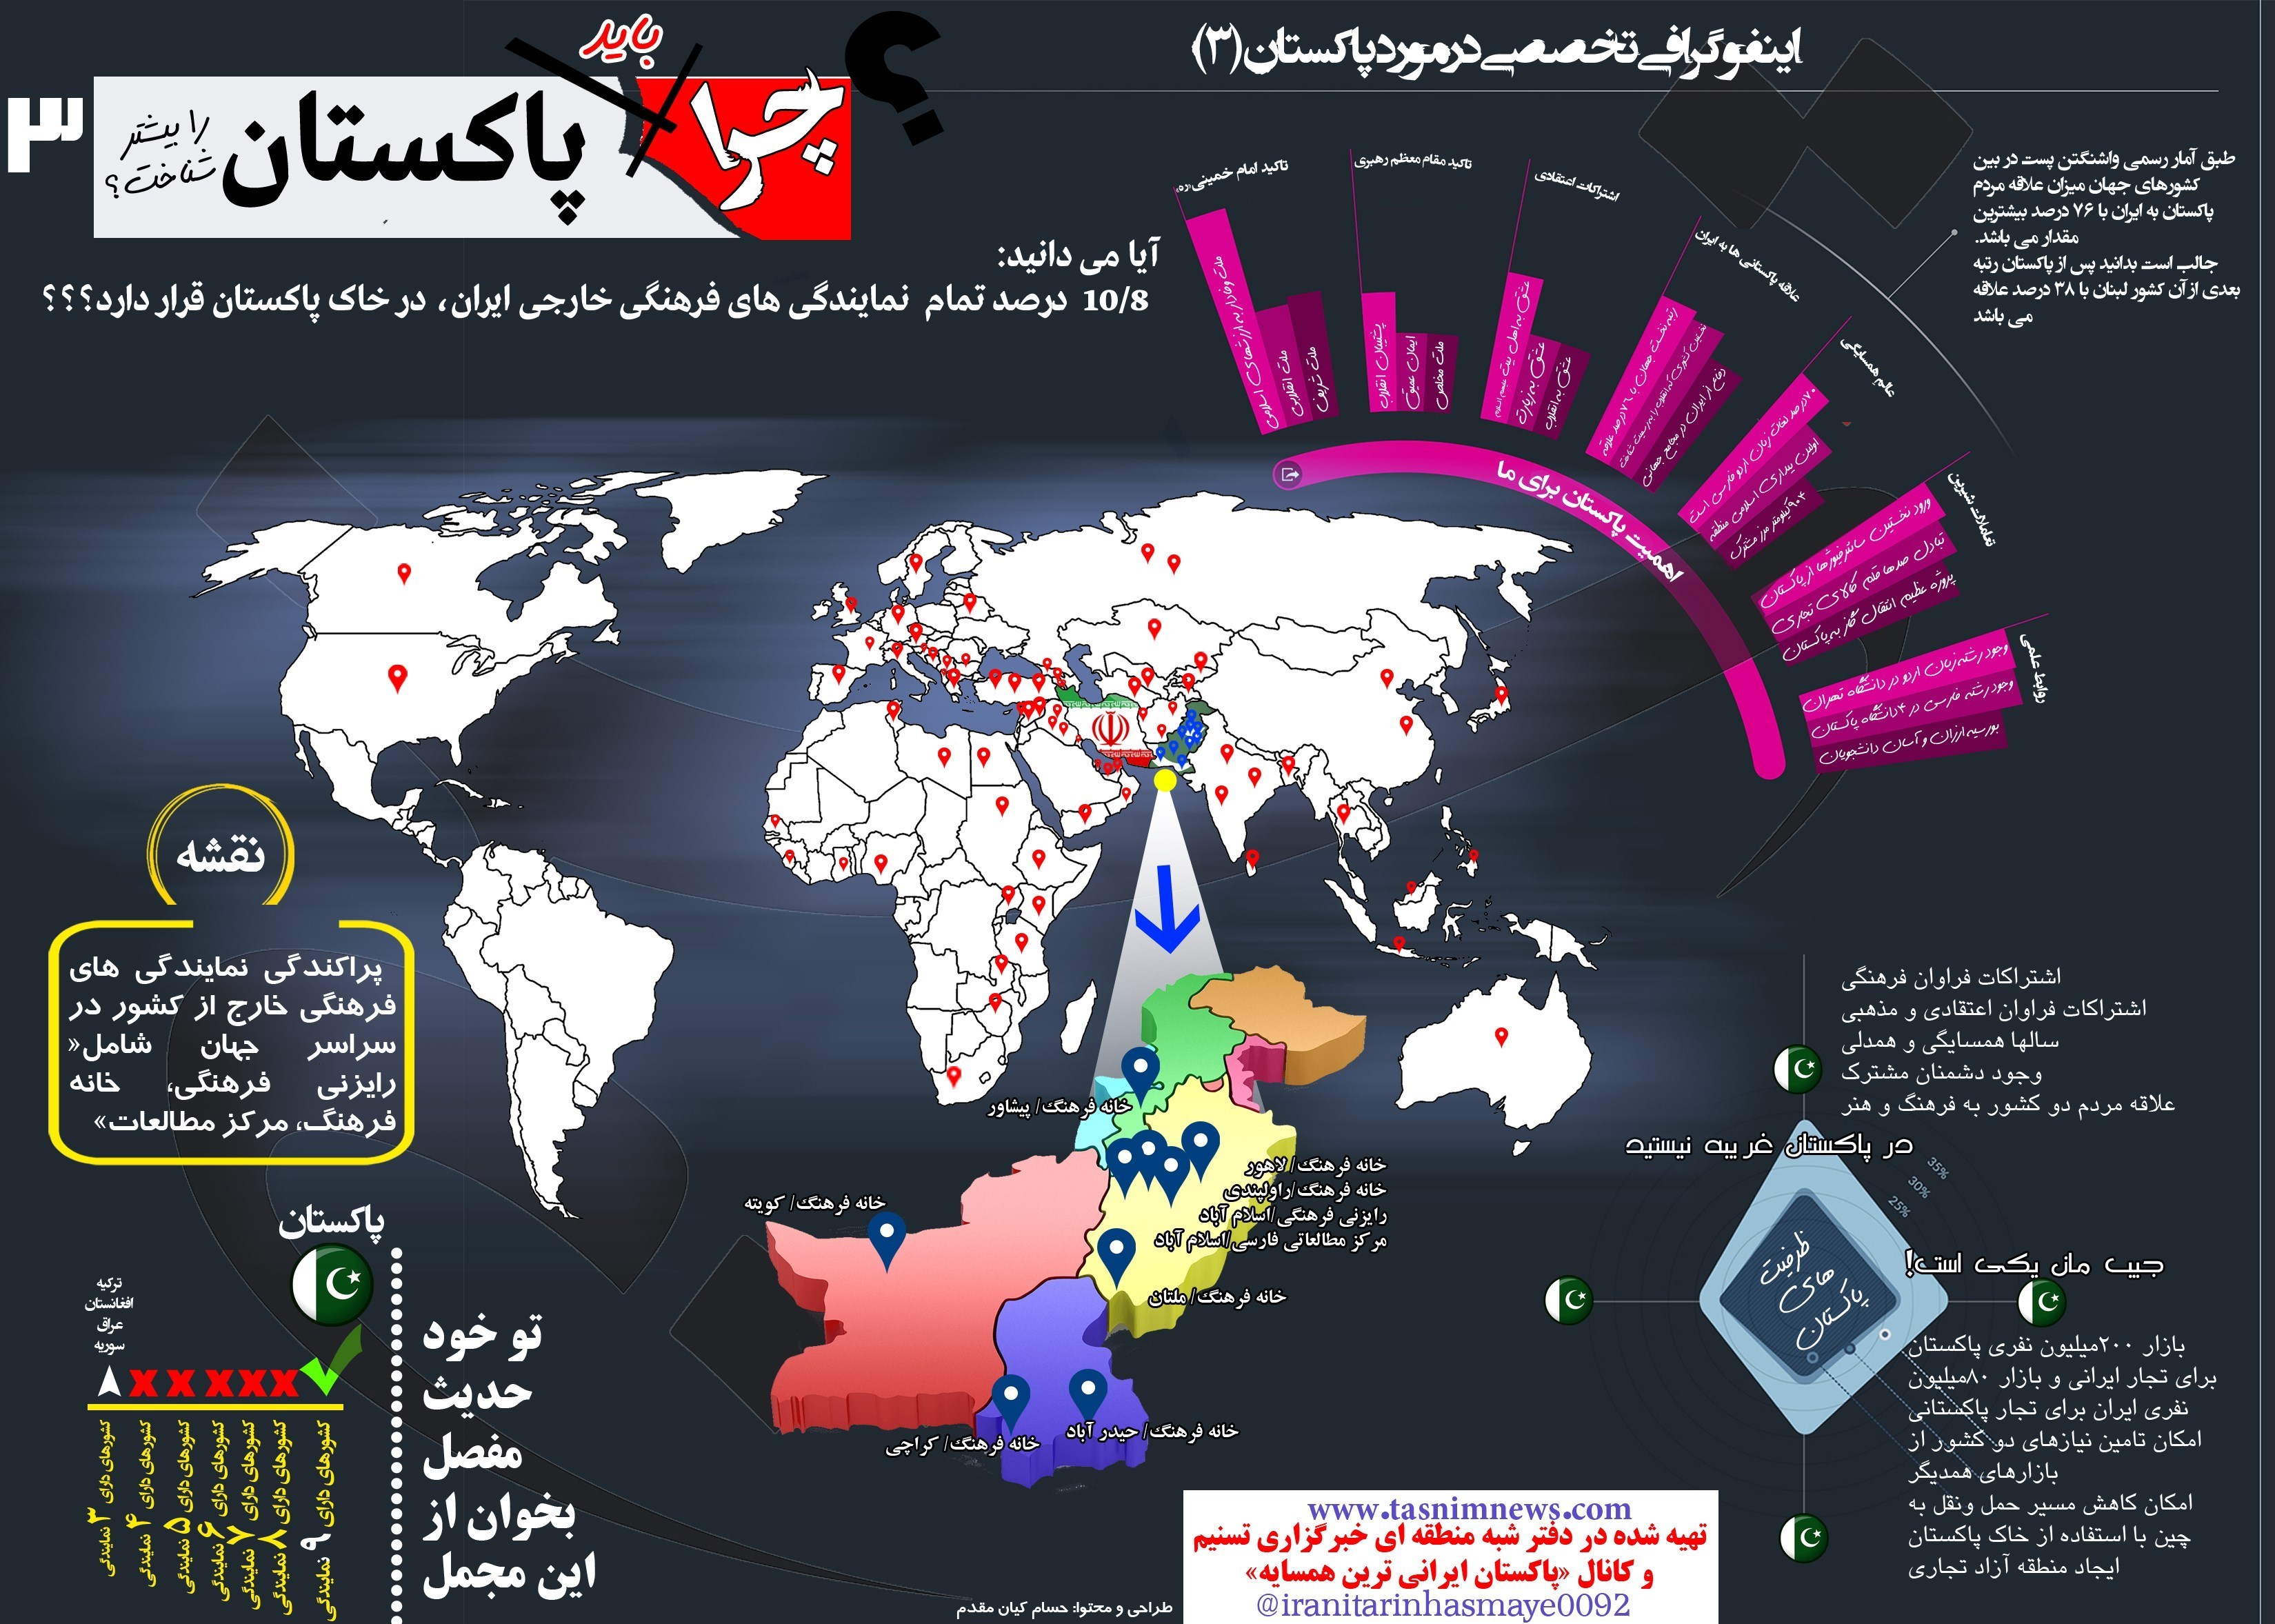 اینفوگرافی3/ پاکستان میزبان بیشترین درصد تمام دفاتر فرهنگی خارج از کشور ایران